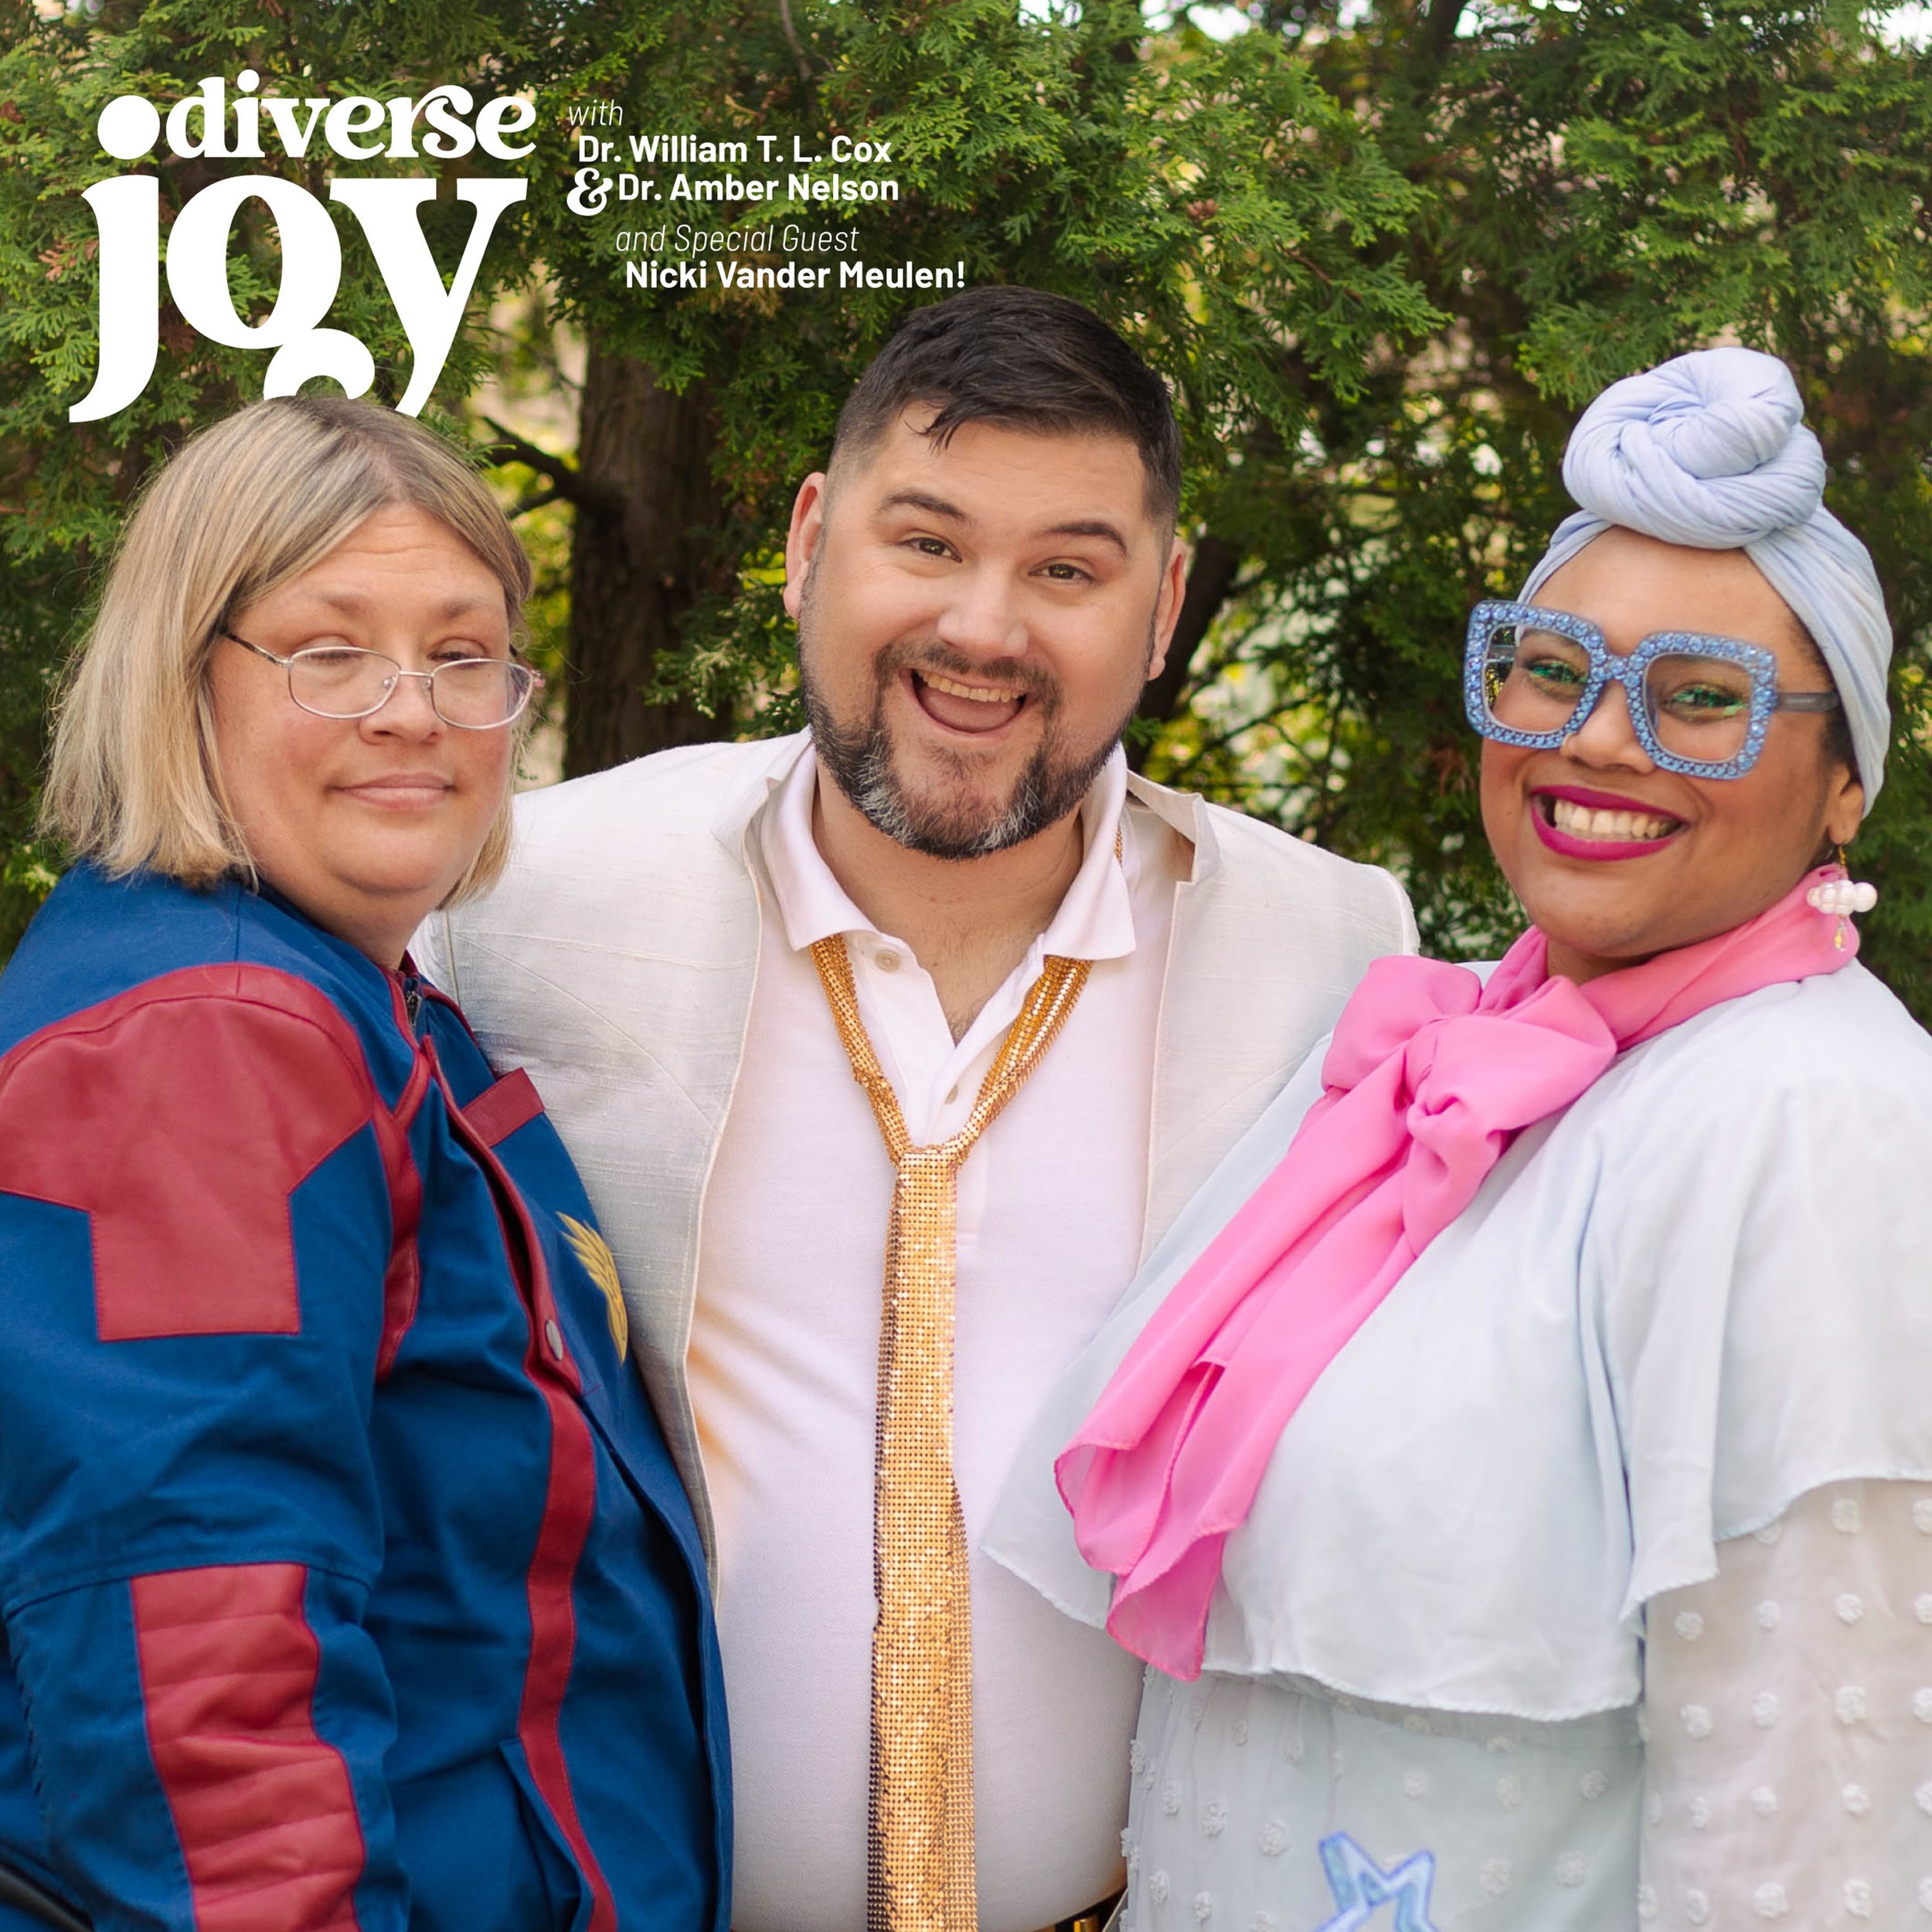 Diverse-Joy-S01E10-Covers_PodBean.jpg